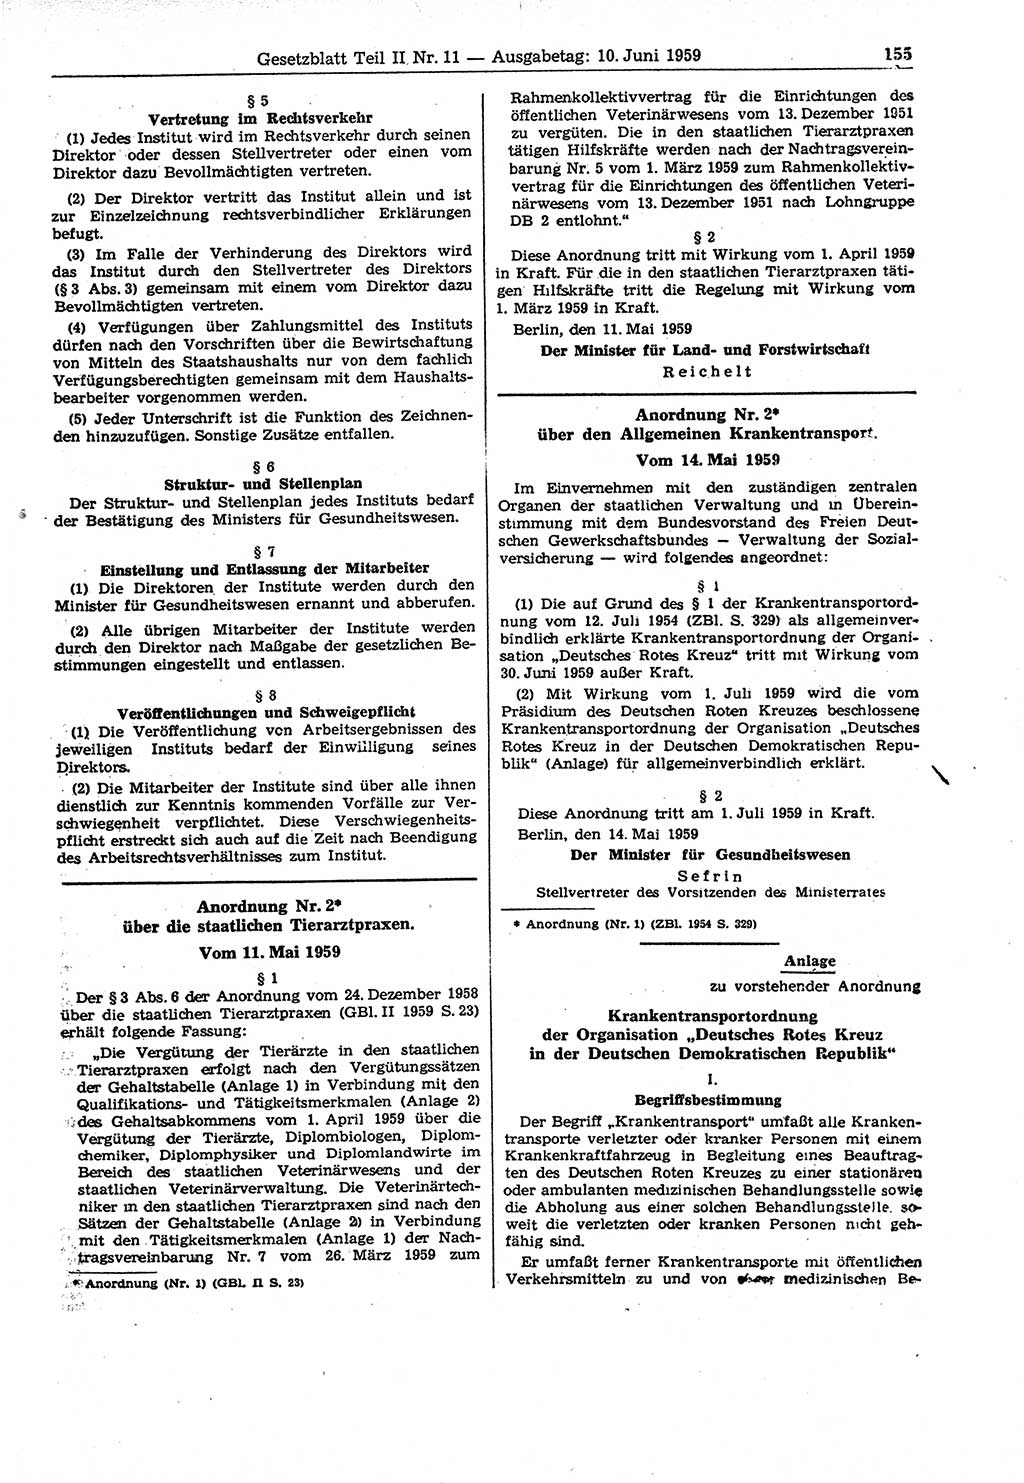 Gesetzblatt (GBl.) der Deutschen Demokratischen Republik (DDR) Teil ⅠⅠ 1959, Seite 155 (GBl. DDR ⅠⅠ 1959, S. 155)